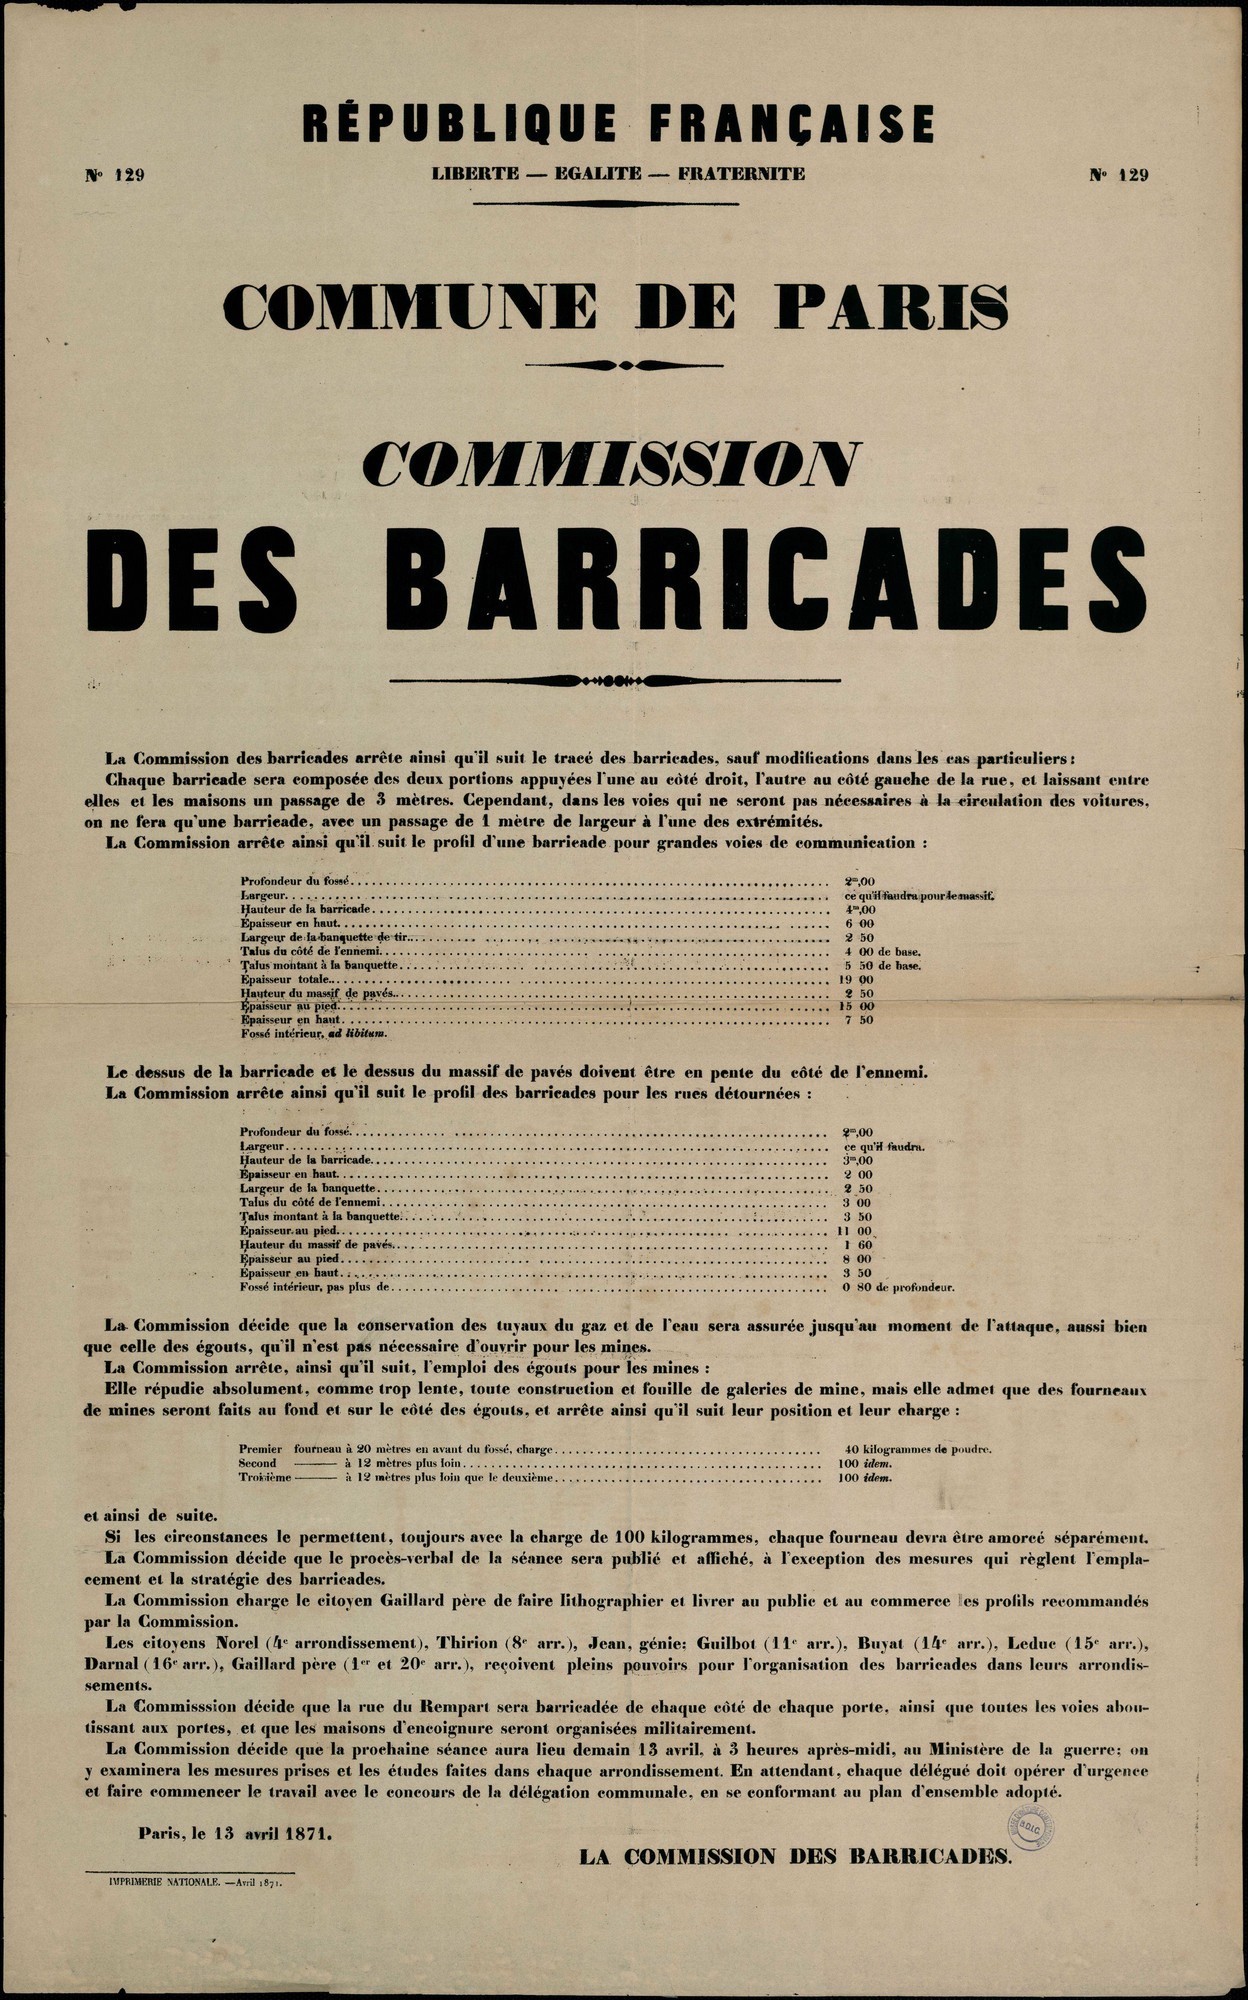 Affiche de la Commune de Paris N° 129 du 13 avril 1871 - Commission des barricades (Sources : argonnaute.parisnanterre.fr)